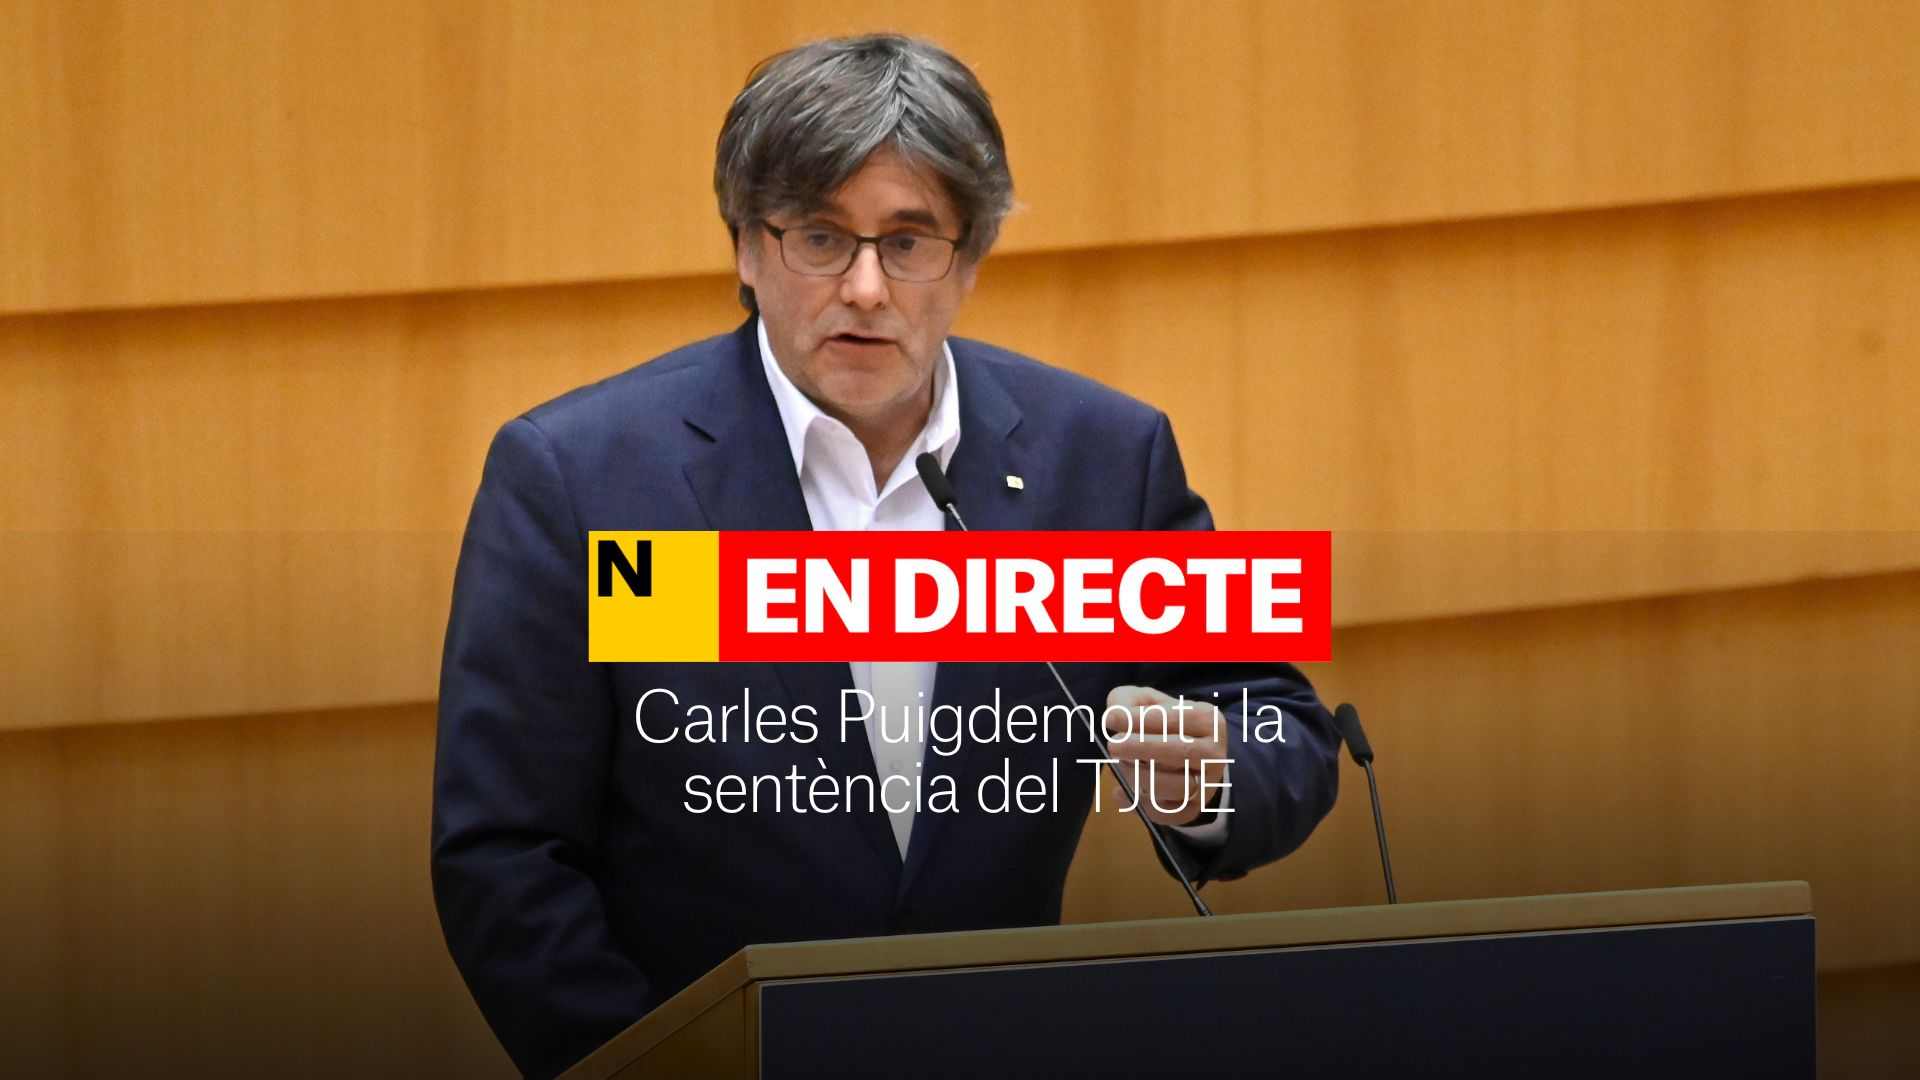 Carles Puigdemont i la sentència del TJUE per les euroordres, última hora | DIRECTE